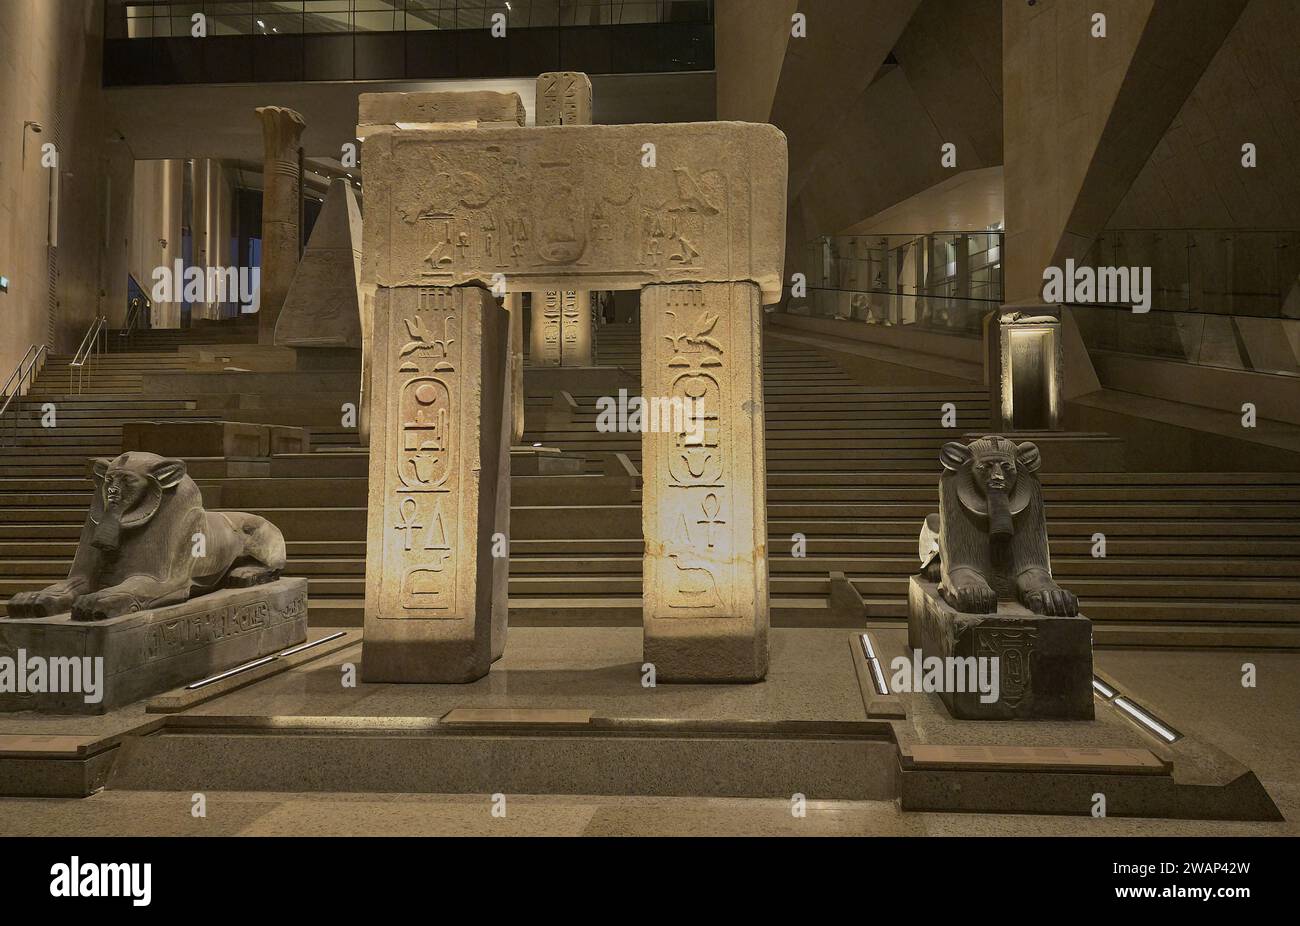 Das große Ägyptische Museum, auch bekannt als Gizeh-Museum, ist ein archäologisches Museum in Gizeh, Ägypten, etwa 2 Kilometer vom Pyramidenkomplex von Gizeh entfernt. Stockfoto